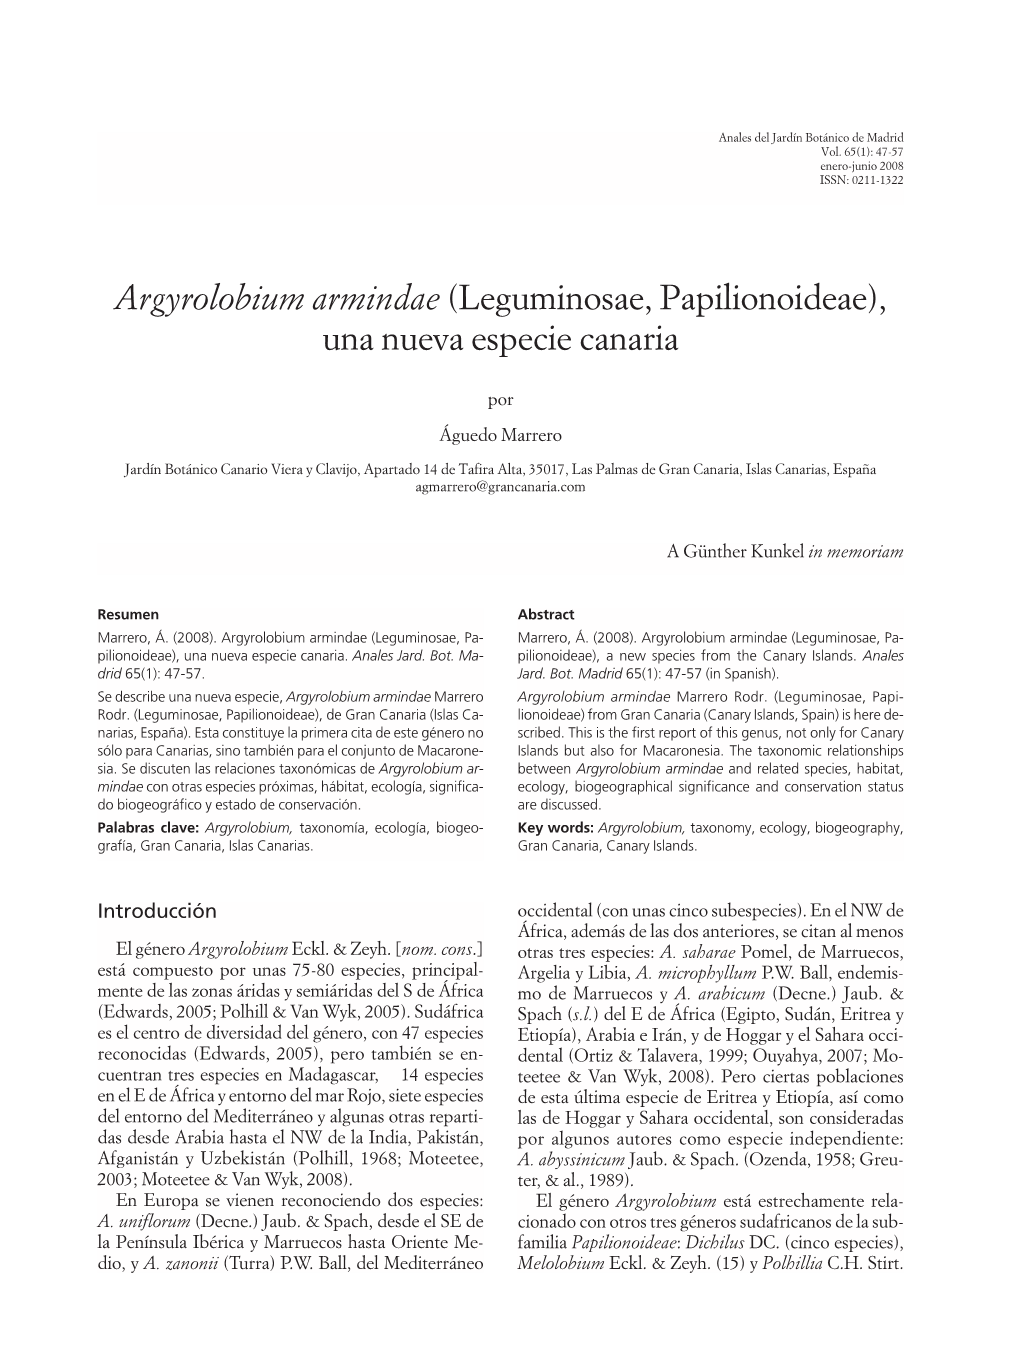 Argyrolobium Armindae (Leguminosae, Papilionoideae), Una Nueva Especie Canaria